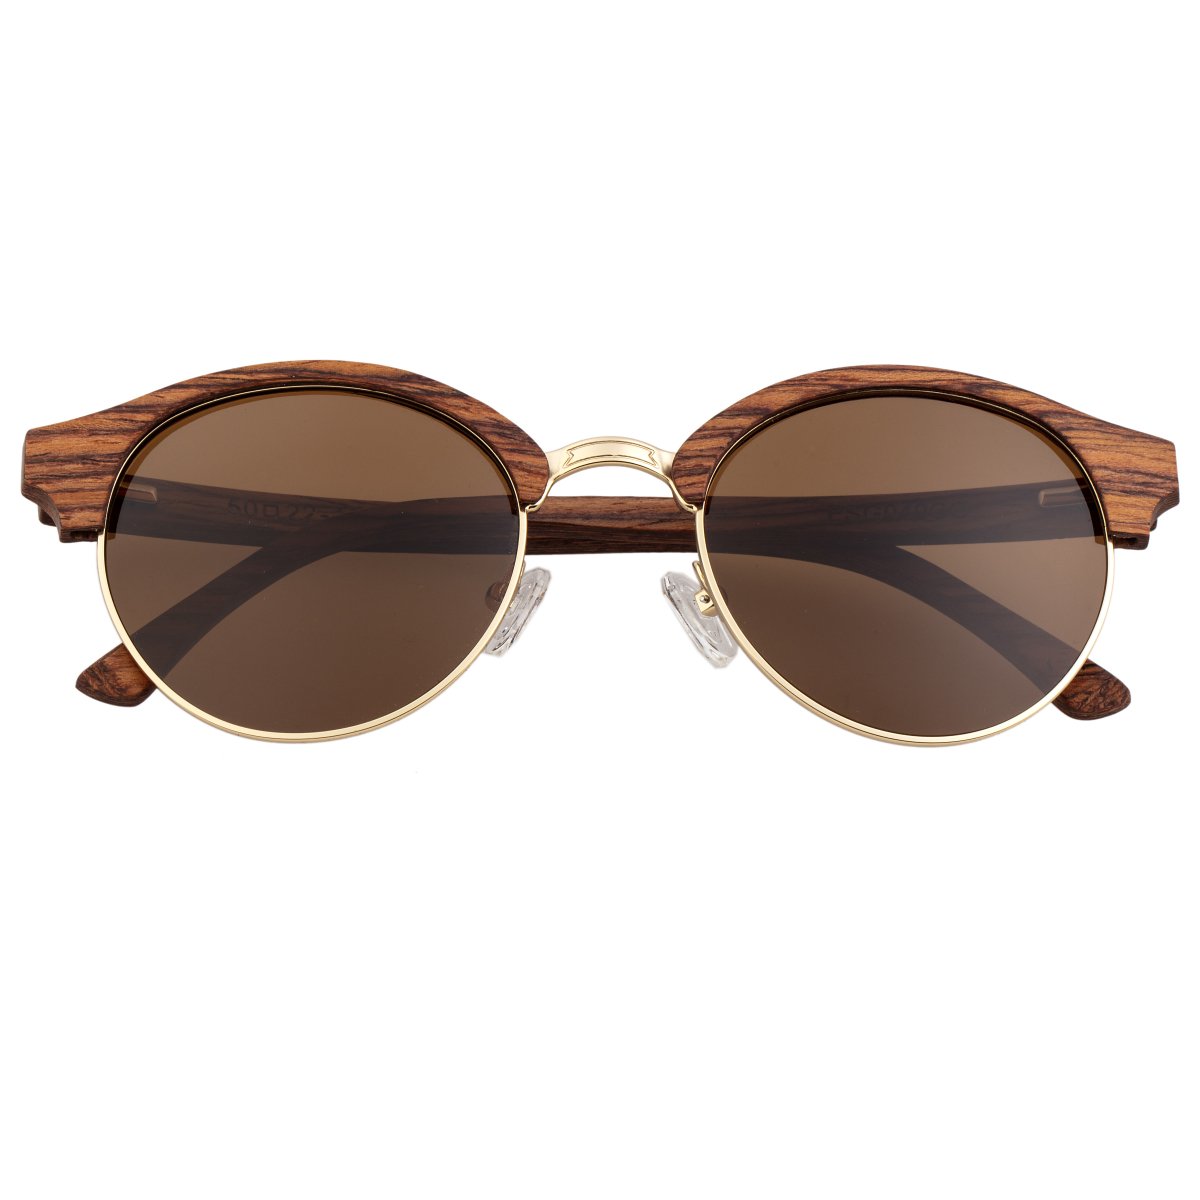 Earth Wood Misty Polarized Sunglasses - Cherry/Brown - ESG049CG